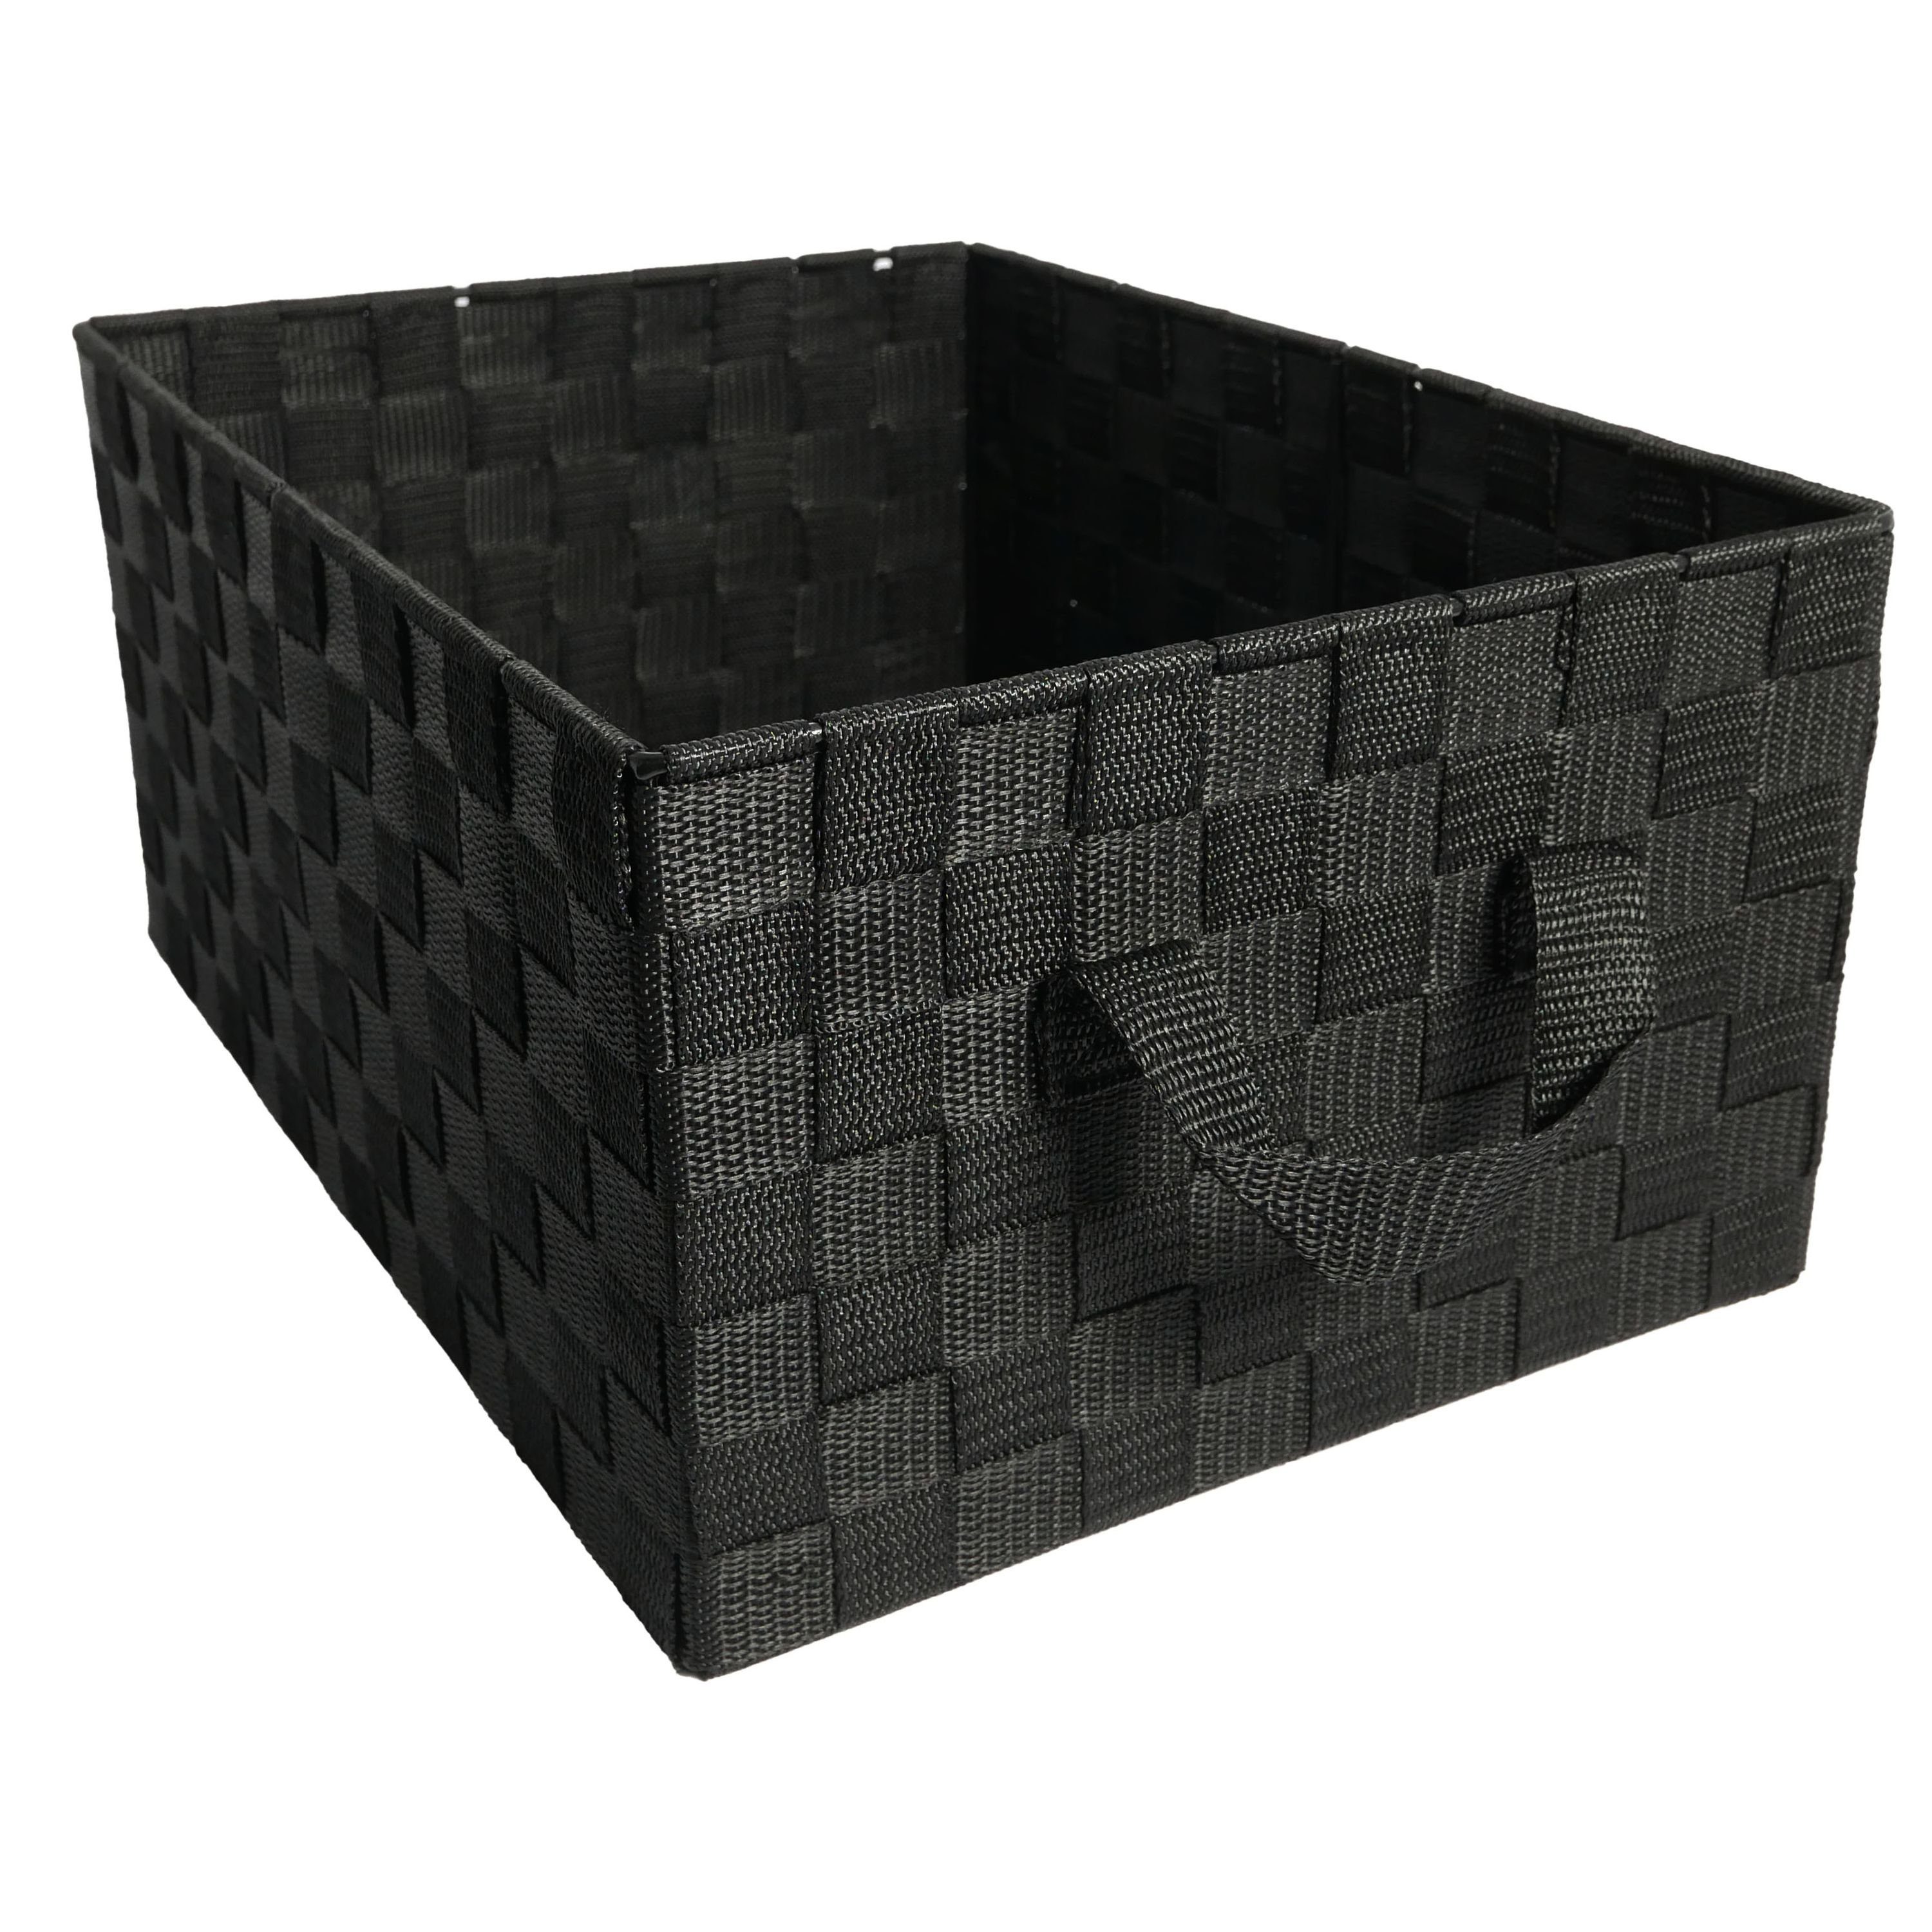 B&S Regalkorb Regalkorb Geflecht schwarz Ordnungsbox rechteckig 28 x 38 cm